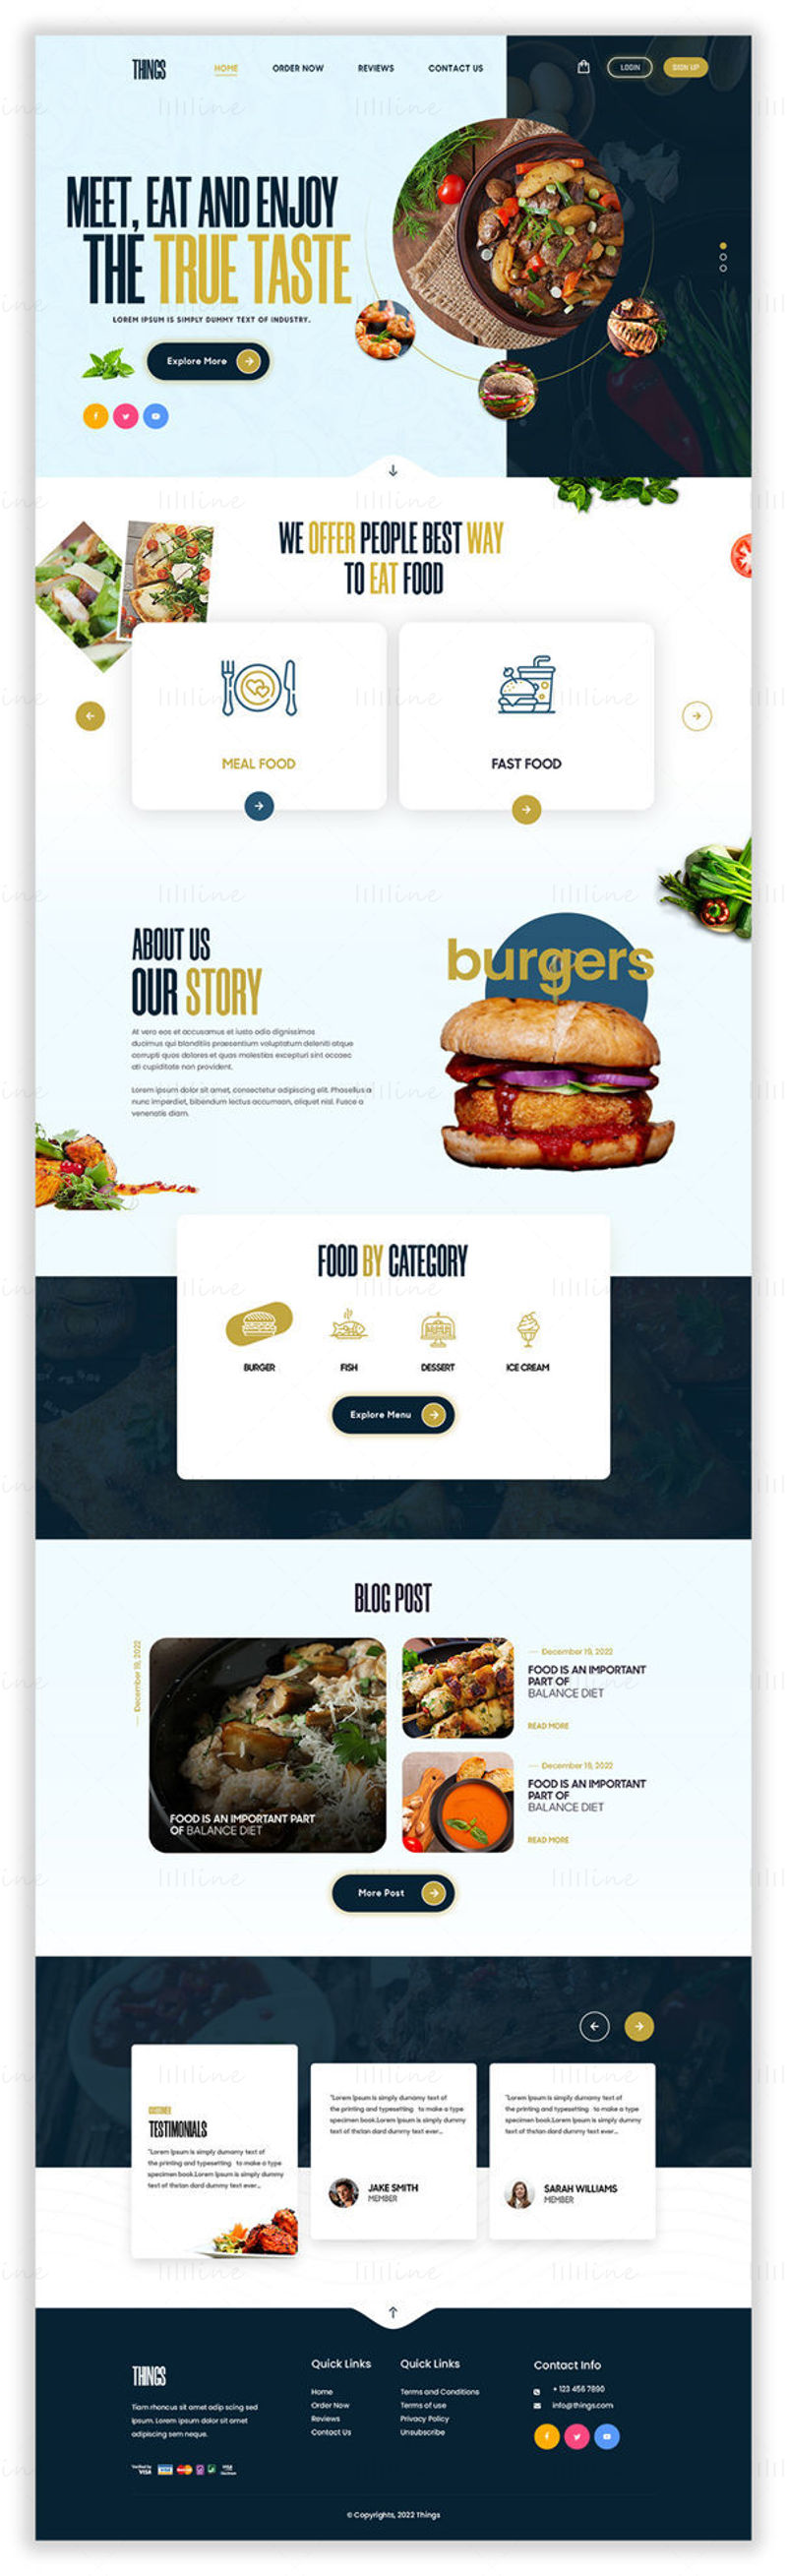 Modèle de nourriture Things - UI Adobe Photoshop